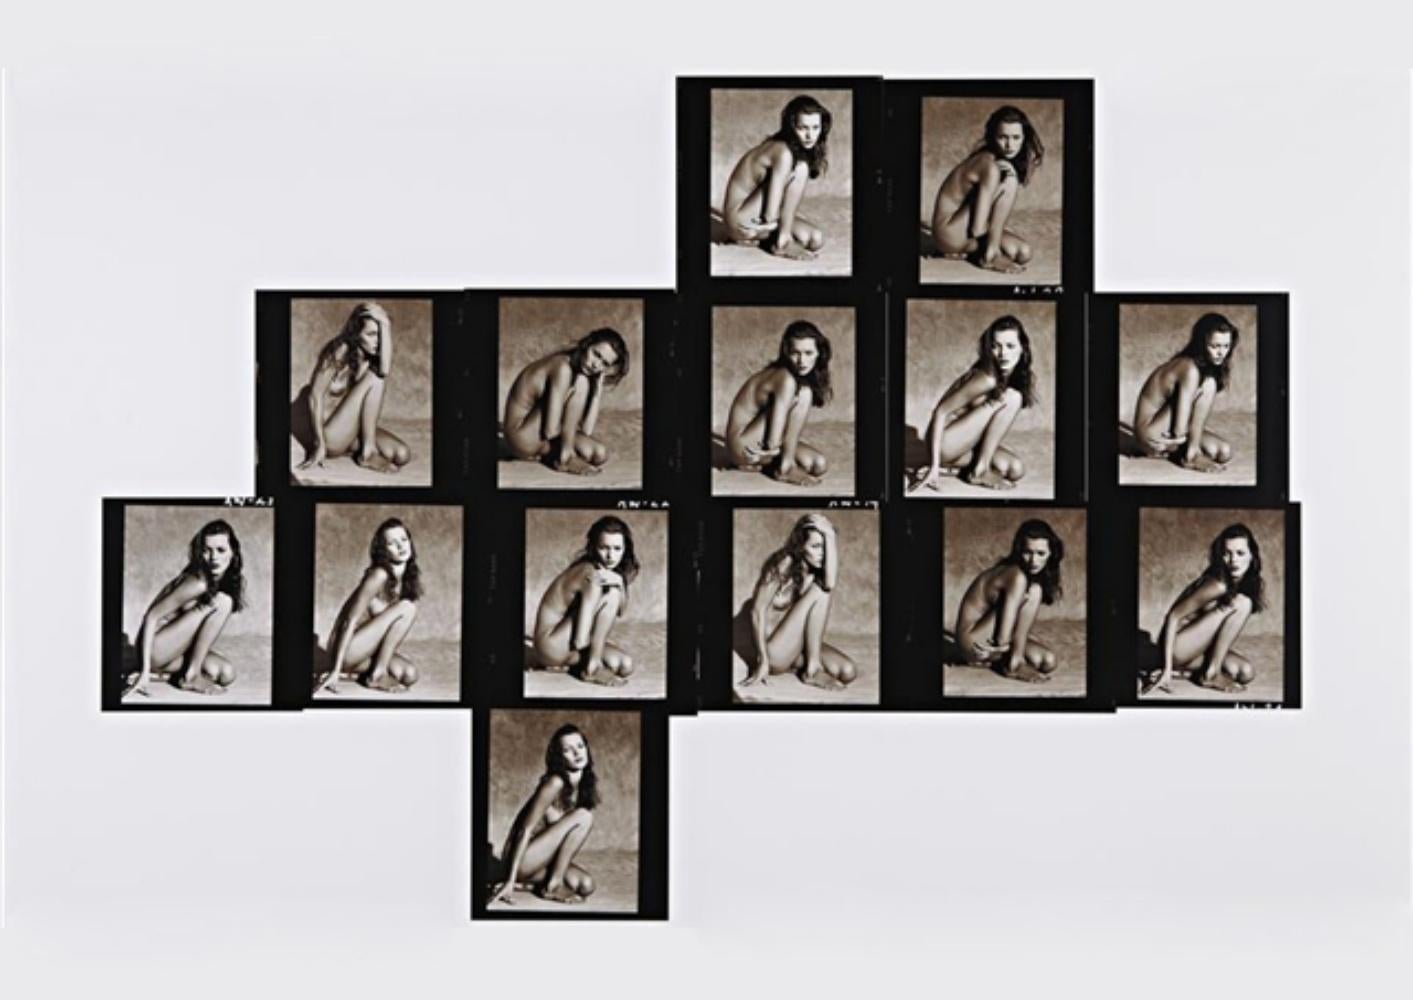 Albert WATSON (*1942, Schottland)
Kate Moss Kontaktbogen (horizontal), Marrakesch, 1993
Archivierungs-Pigmentdruck
Blatt 107 x 142 cm (42 1/8 x 55 7/8 in.)
Ausgabe von 10; plus 2 AP; AP1
nur drucken

Albert Watson wurde 1942 in Edinburgh,